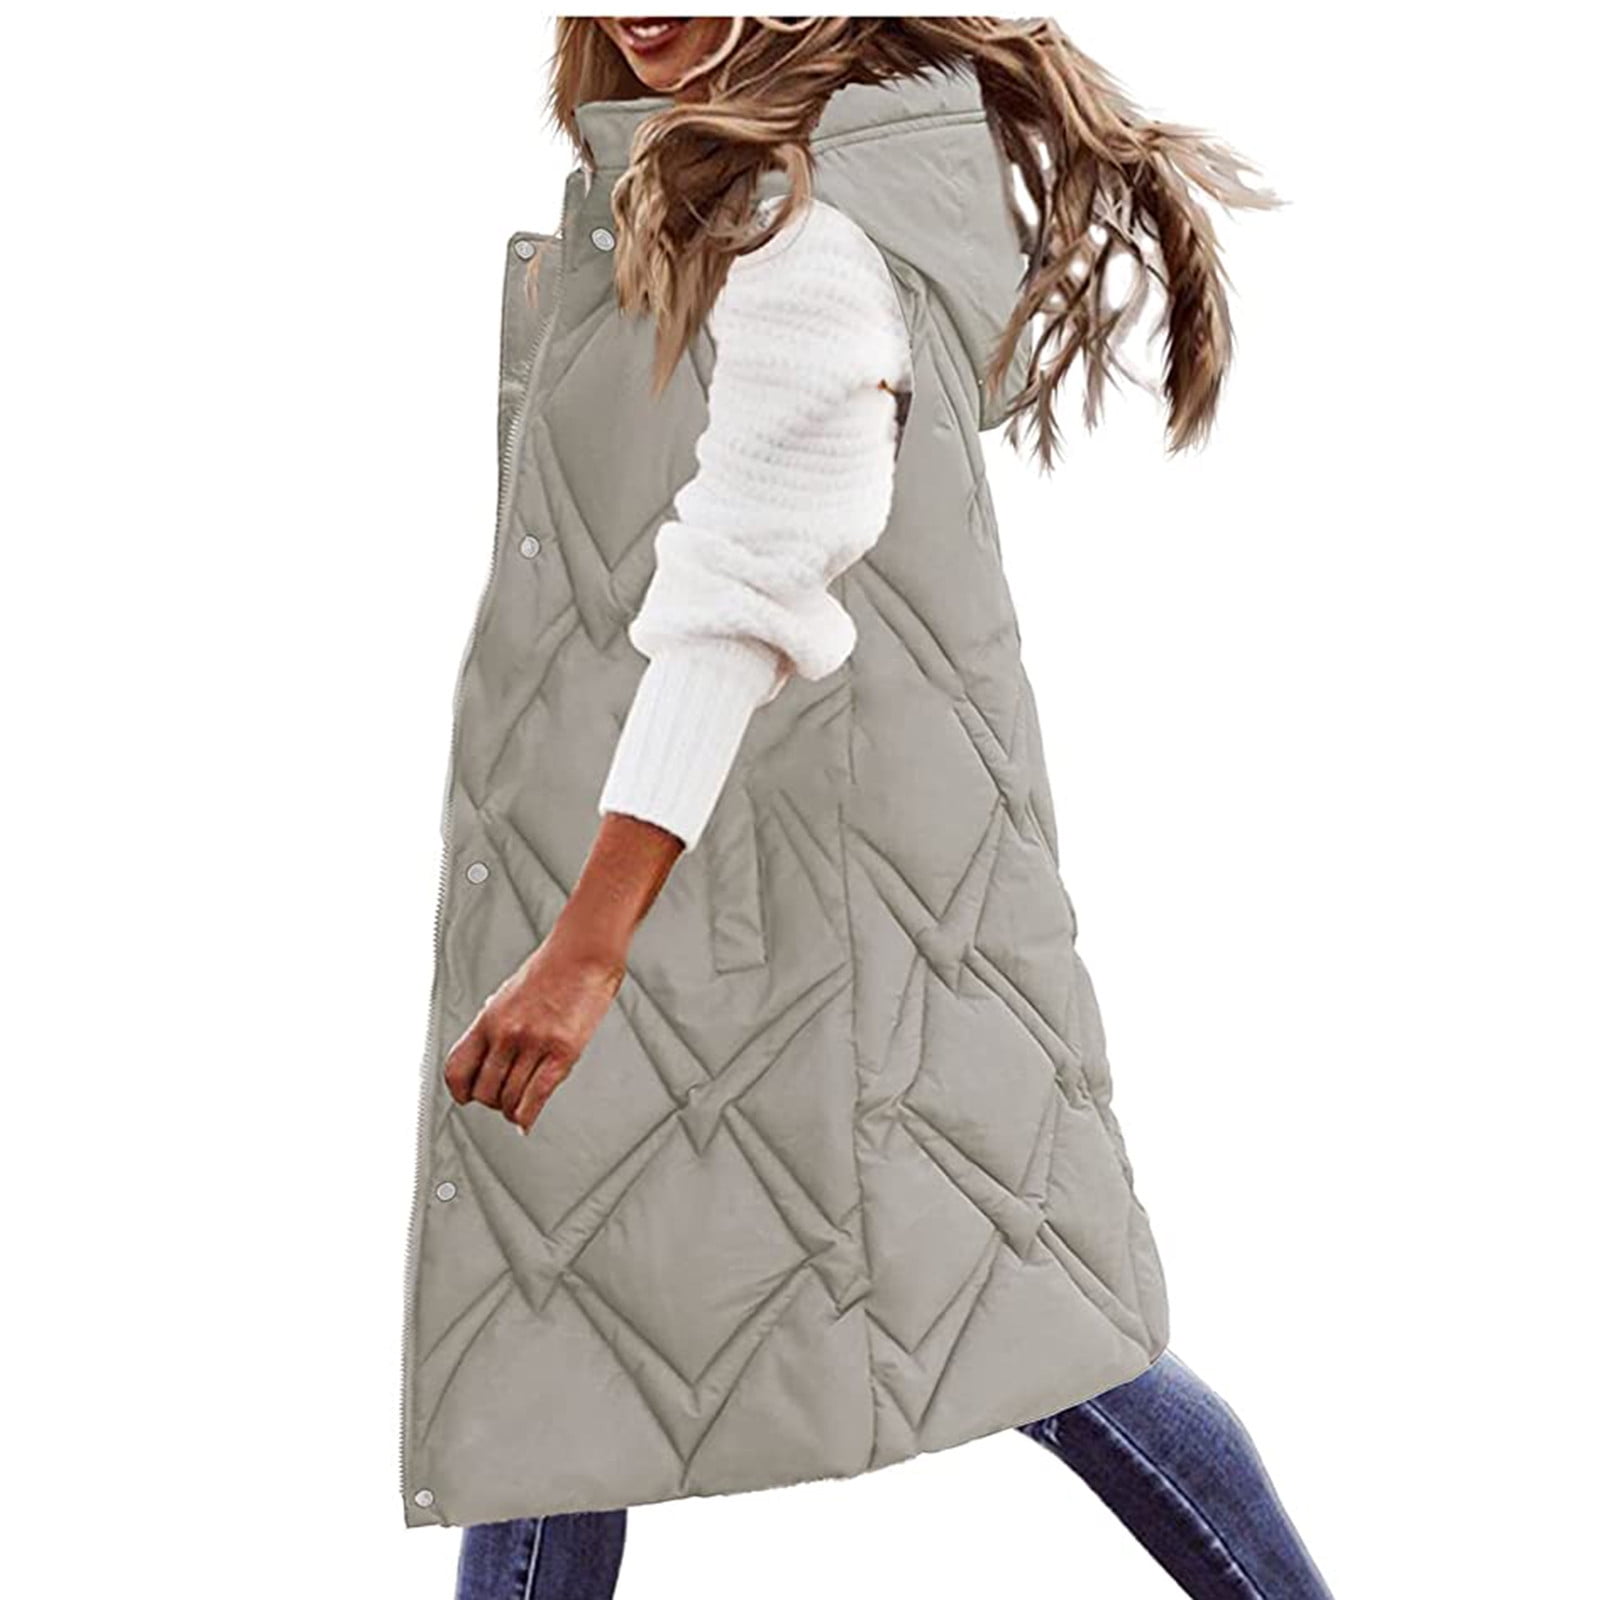 PRETTYGARDEN Women's Fashion Winter Coat Long Sleeve Lapel Zip Up